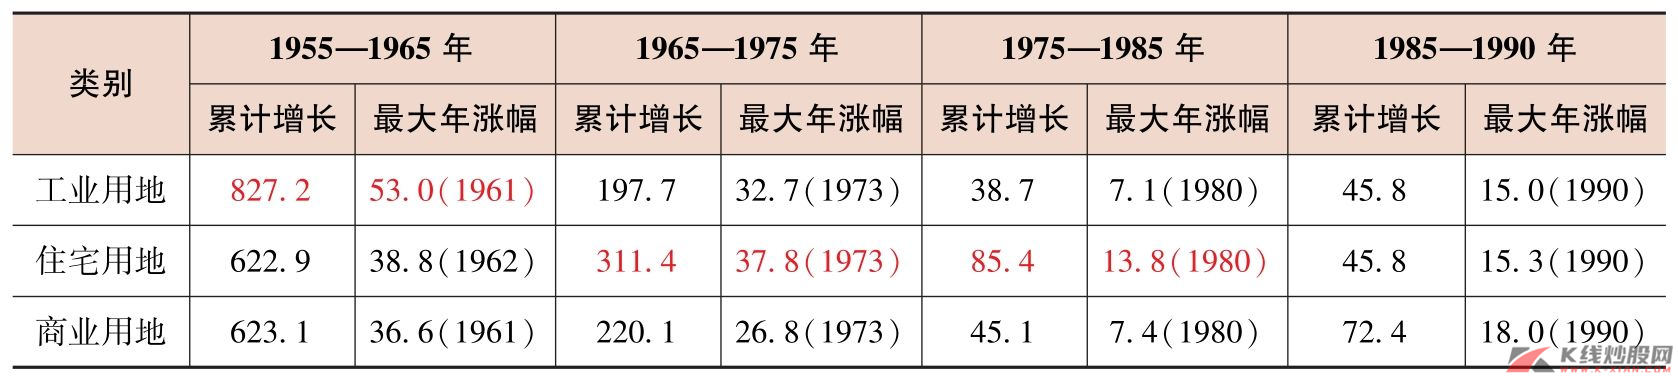 日本不同阶段不同类型的土地价格涨幅情况统计（%）